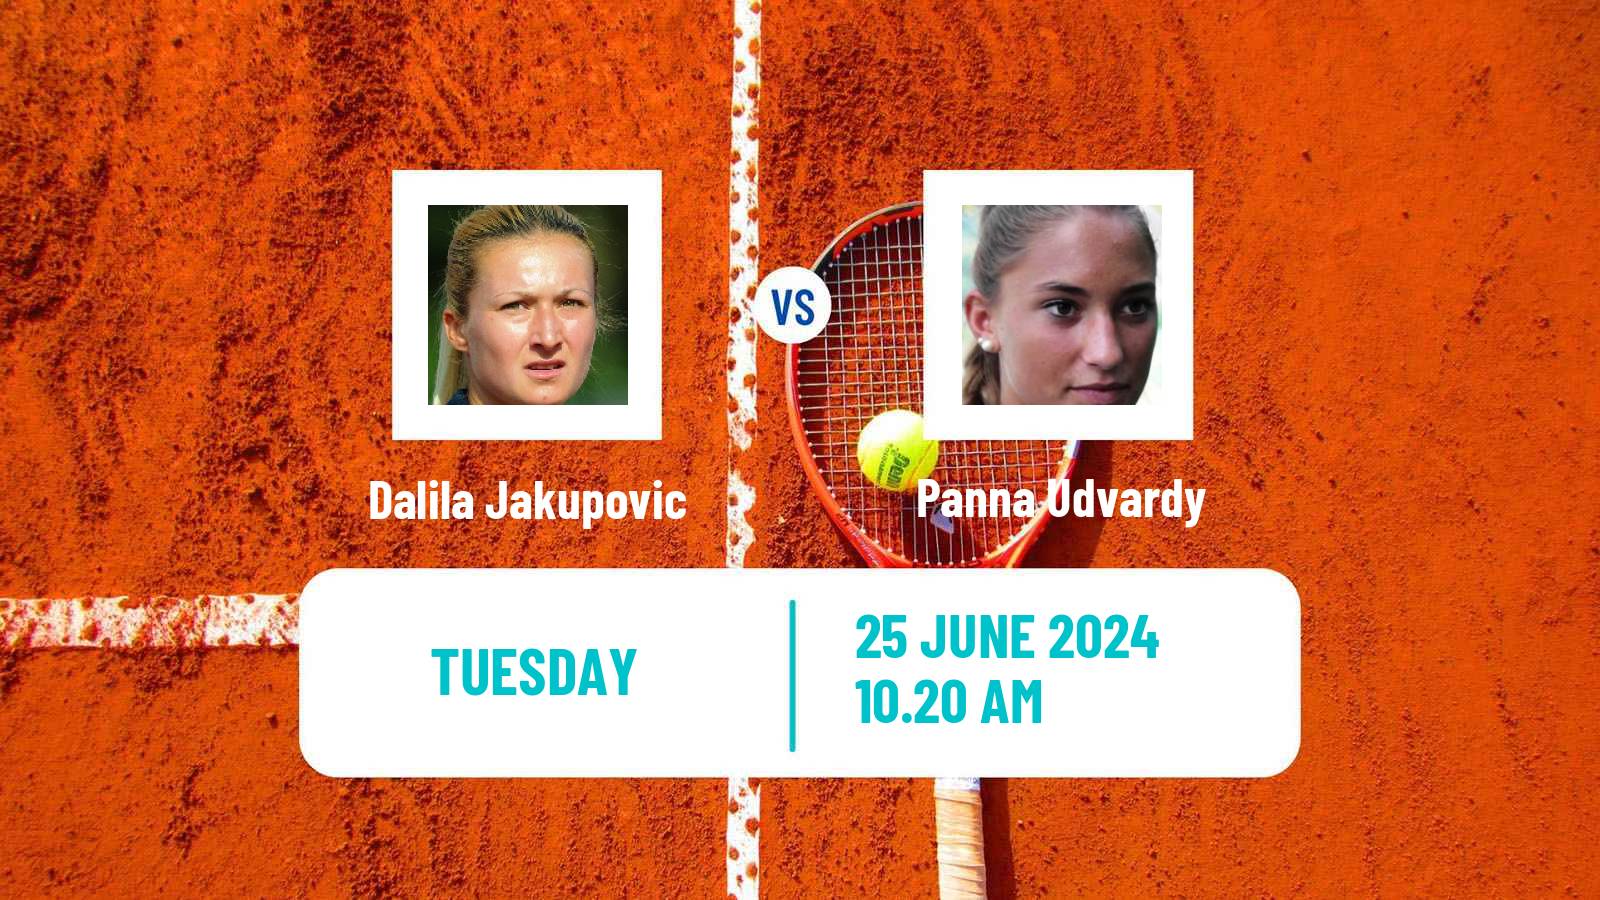 Tennis WTA Wimbledon Dalila Jakupovic - Panna Udvardy